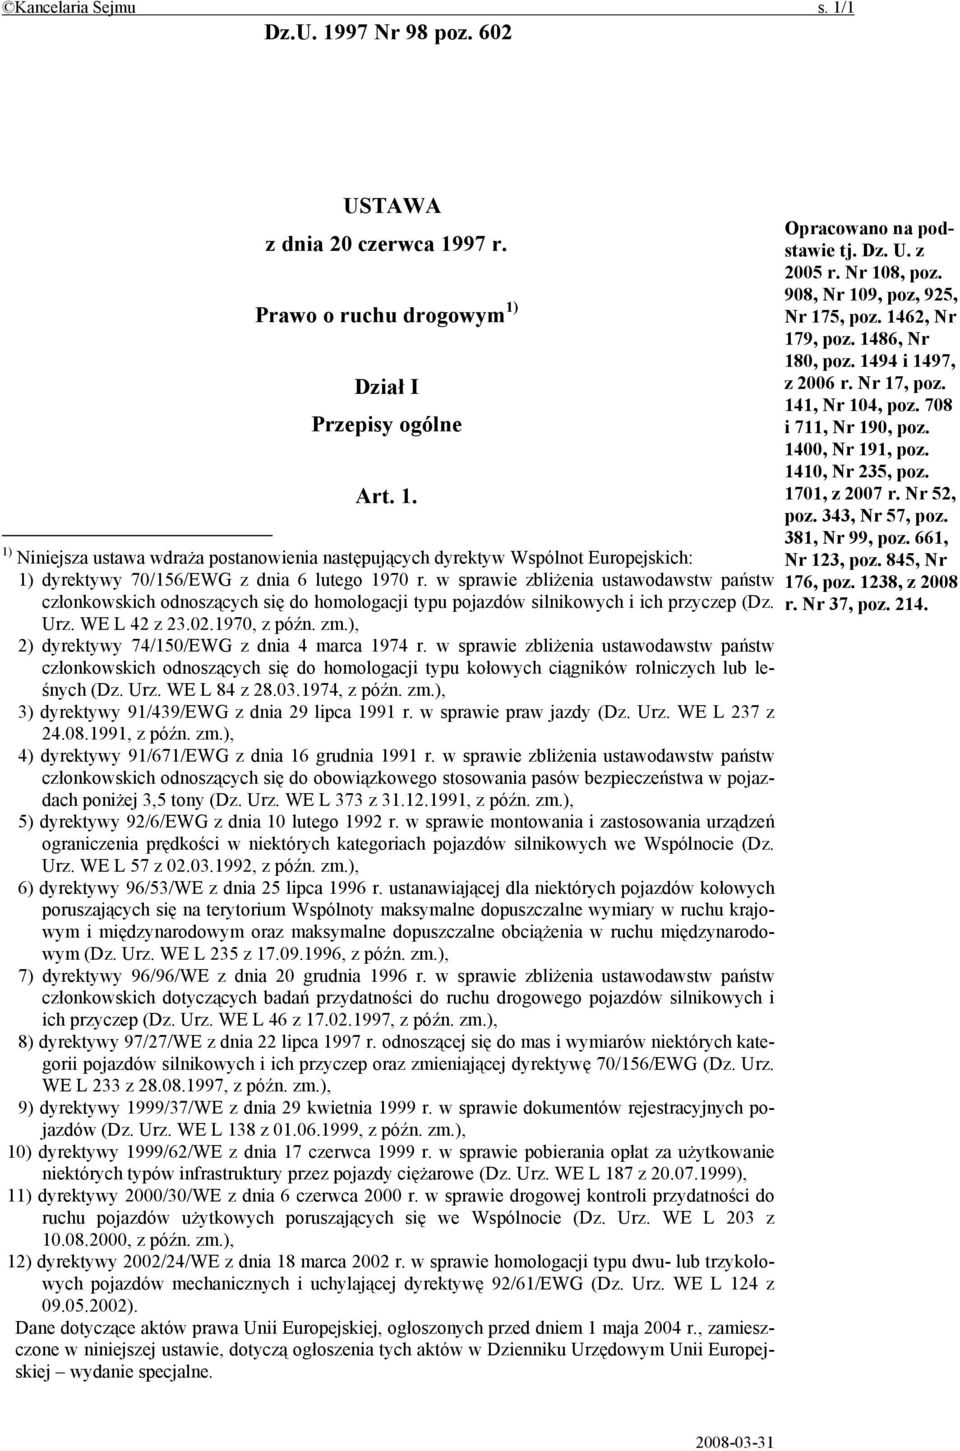 ), 2) dyrektywy 74/150/EWG z dnia 4 marca 1974 r. w sprawie zbliżenia ustawodawstw państw członkowskich odnoszących się do homologacji typu kołowych ciągników rolniczych lub leśnych (Dz. Urz.